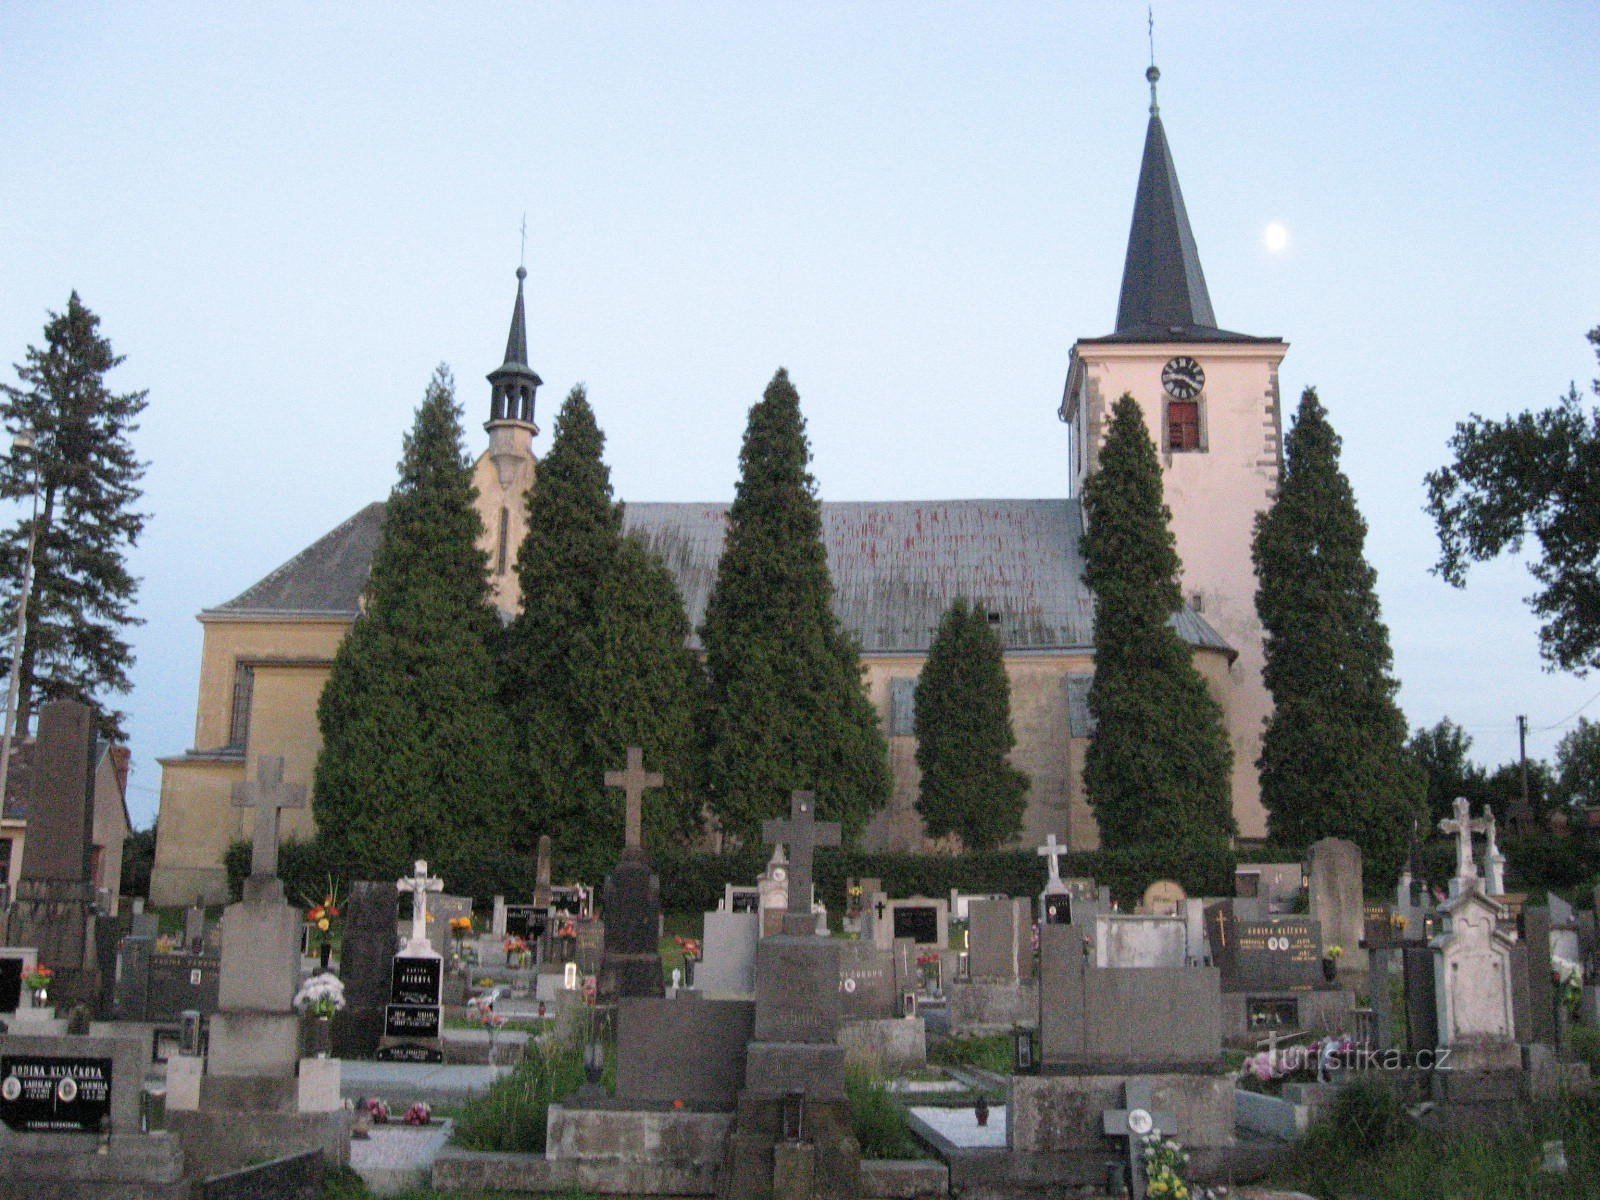 cimitirul si biserica Sf. Jiří în Kunčín